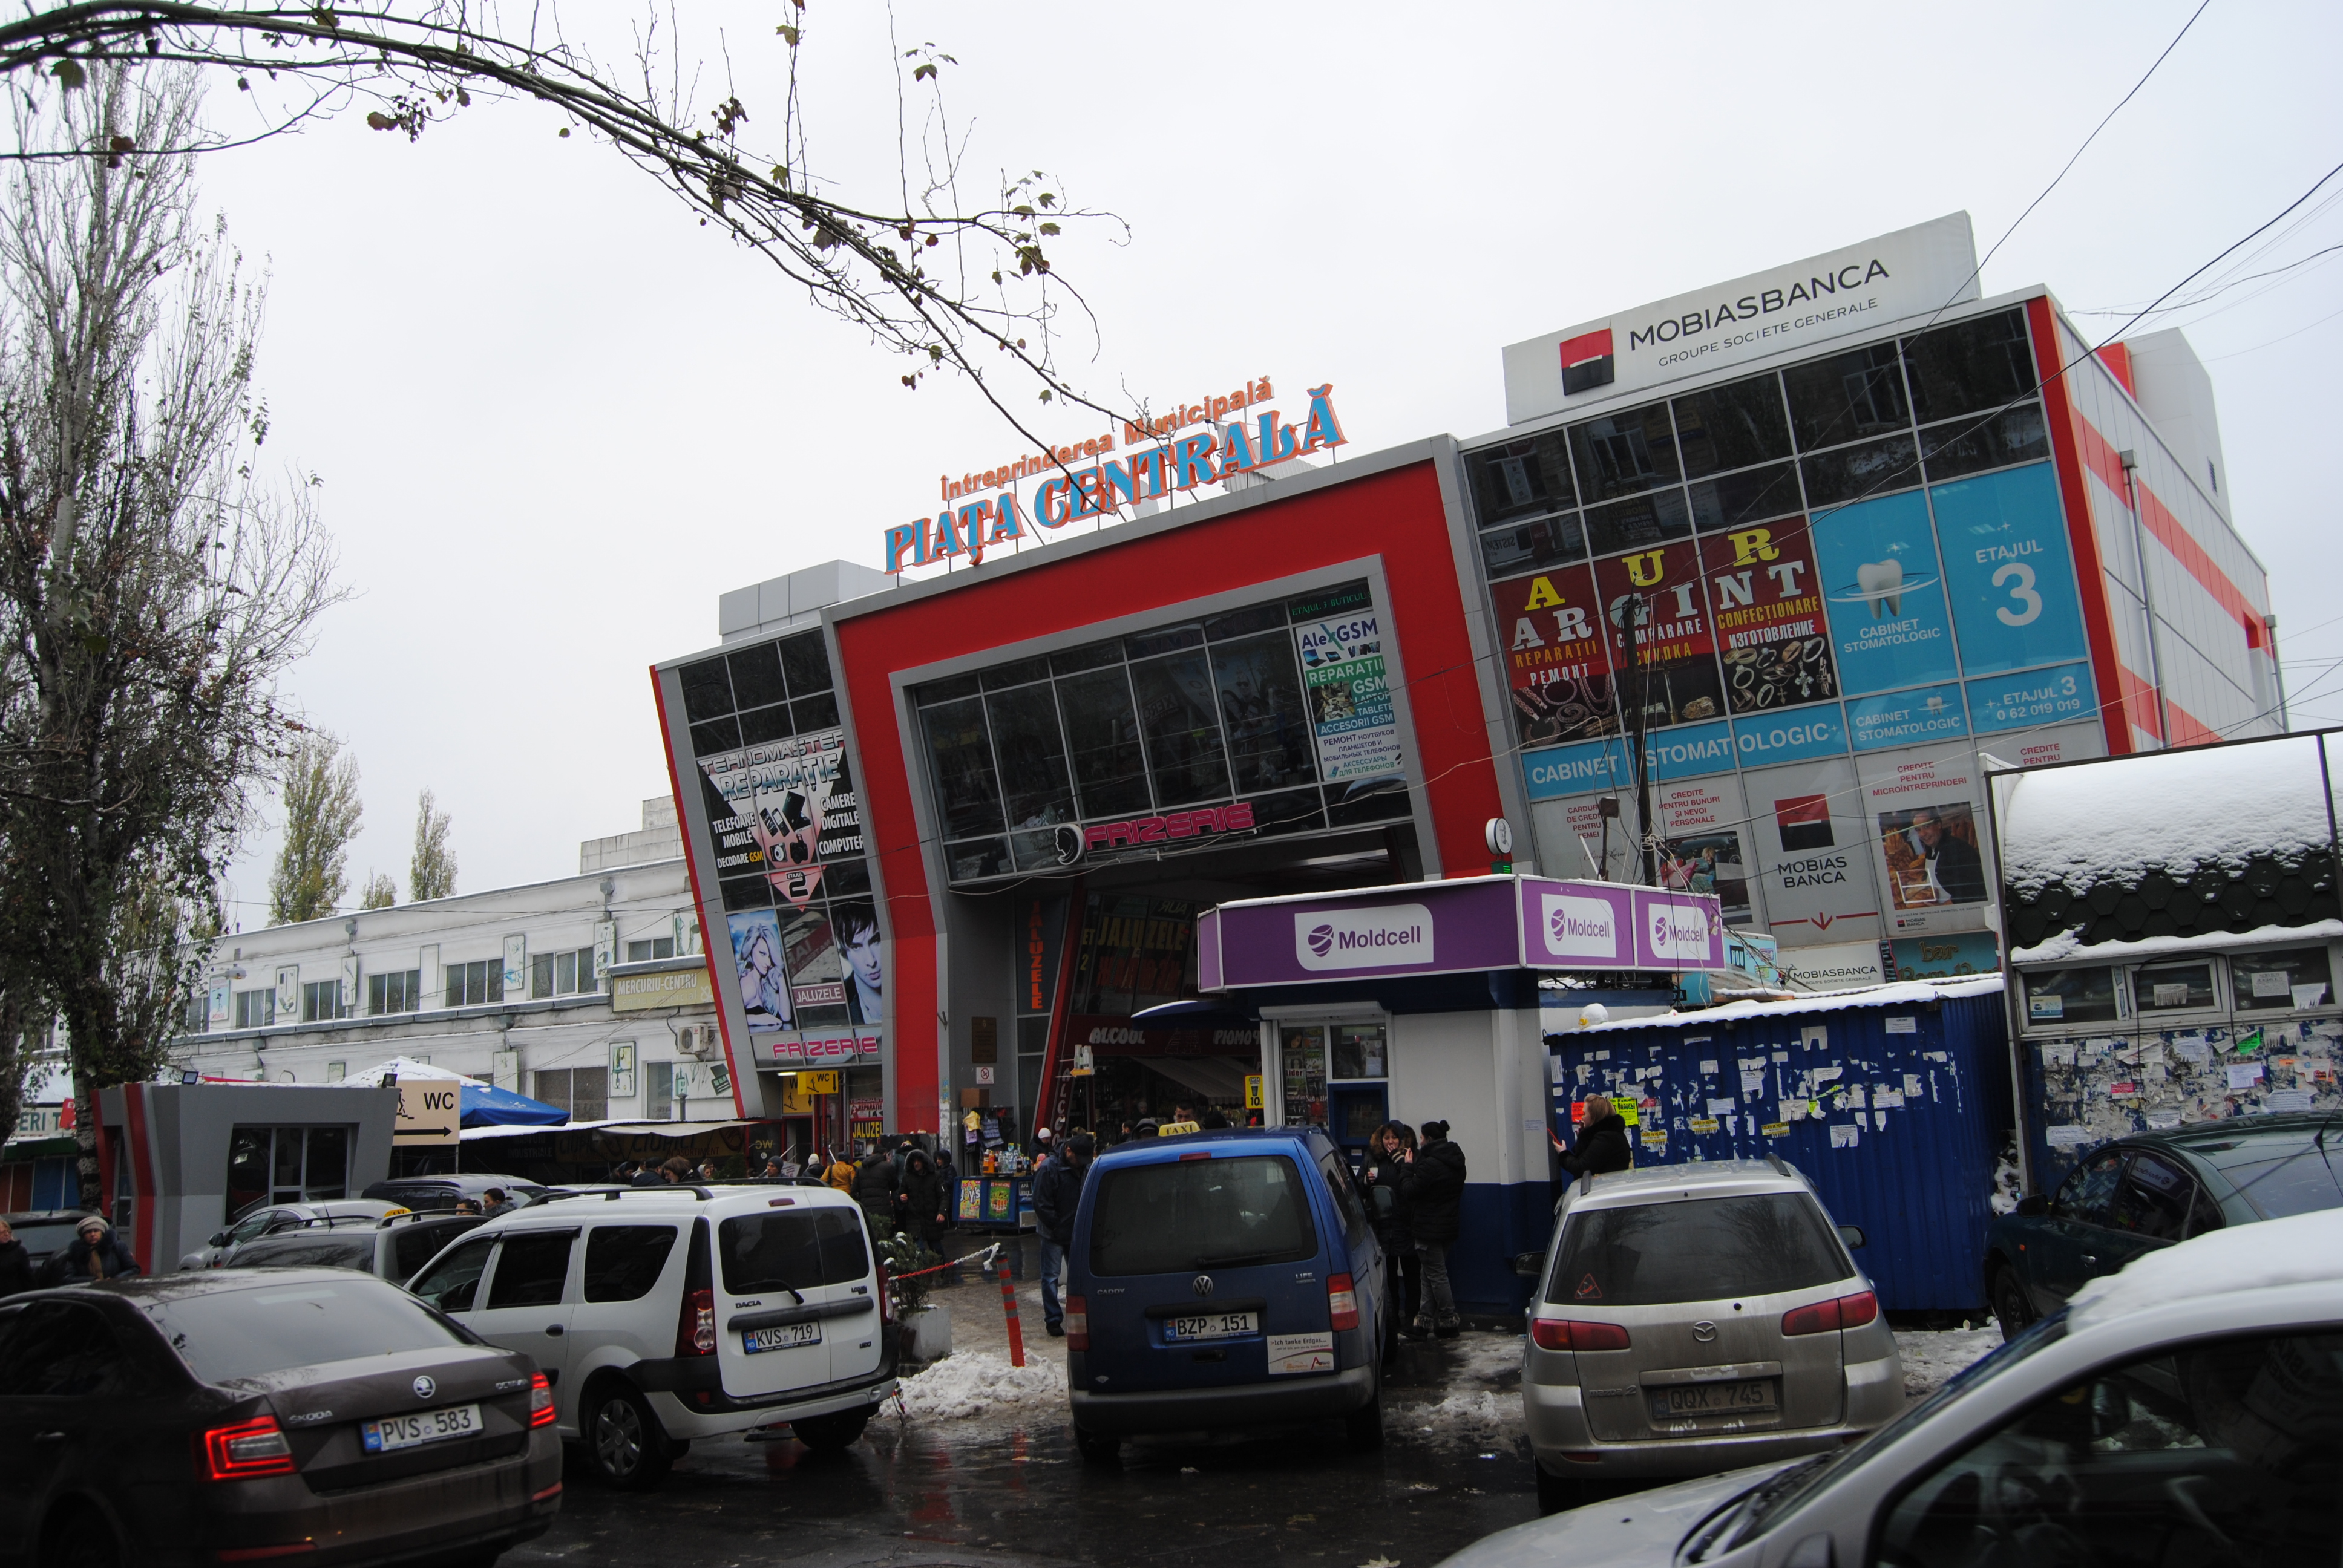 Piata Centrala, el mercado de Chisinau